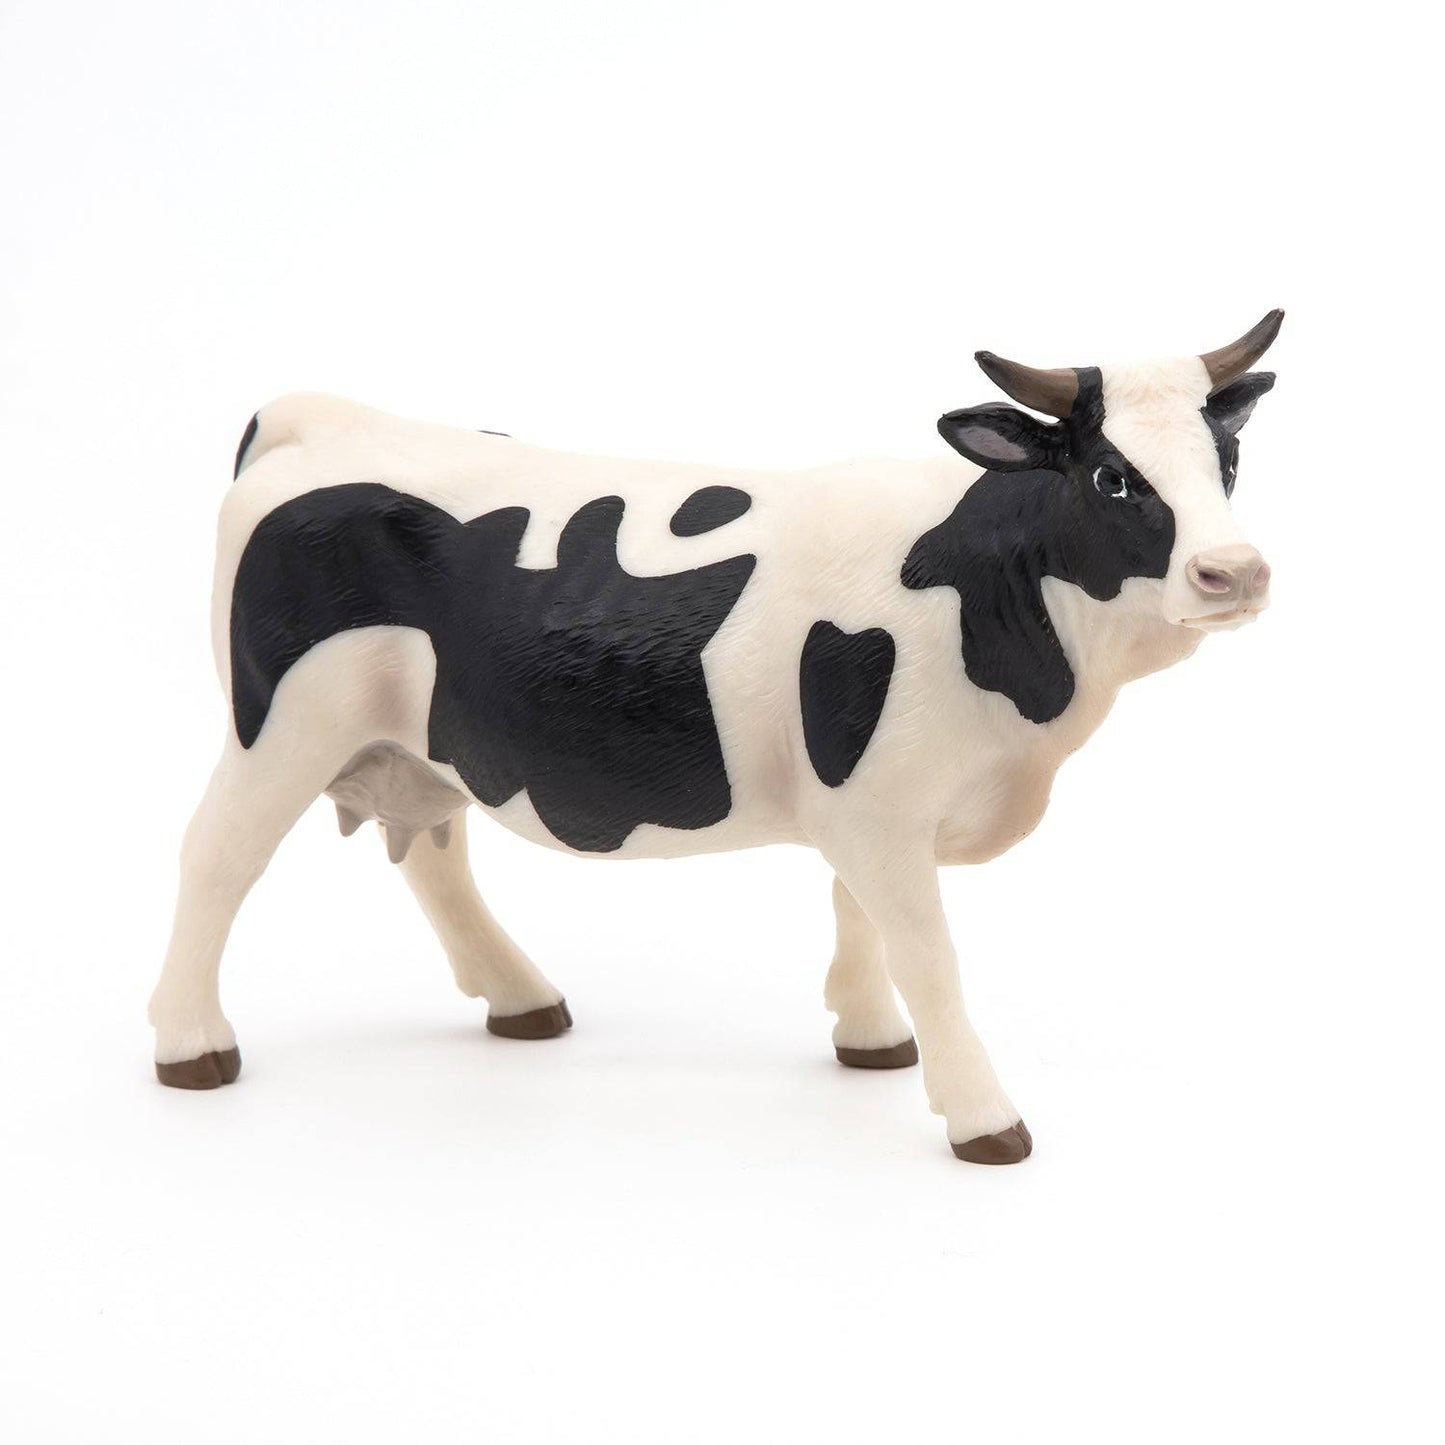 Figurine vache noire et blanche - Maison Continuum